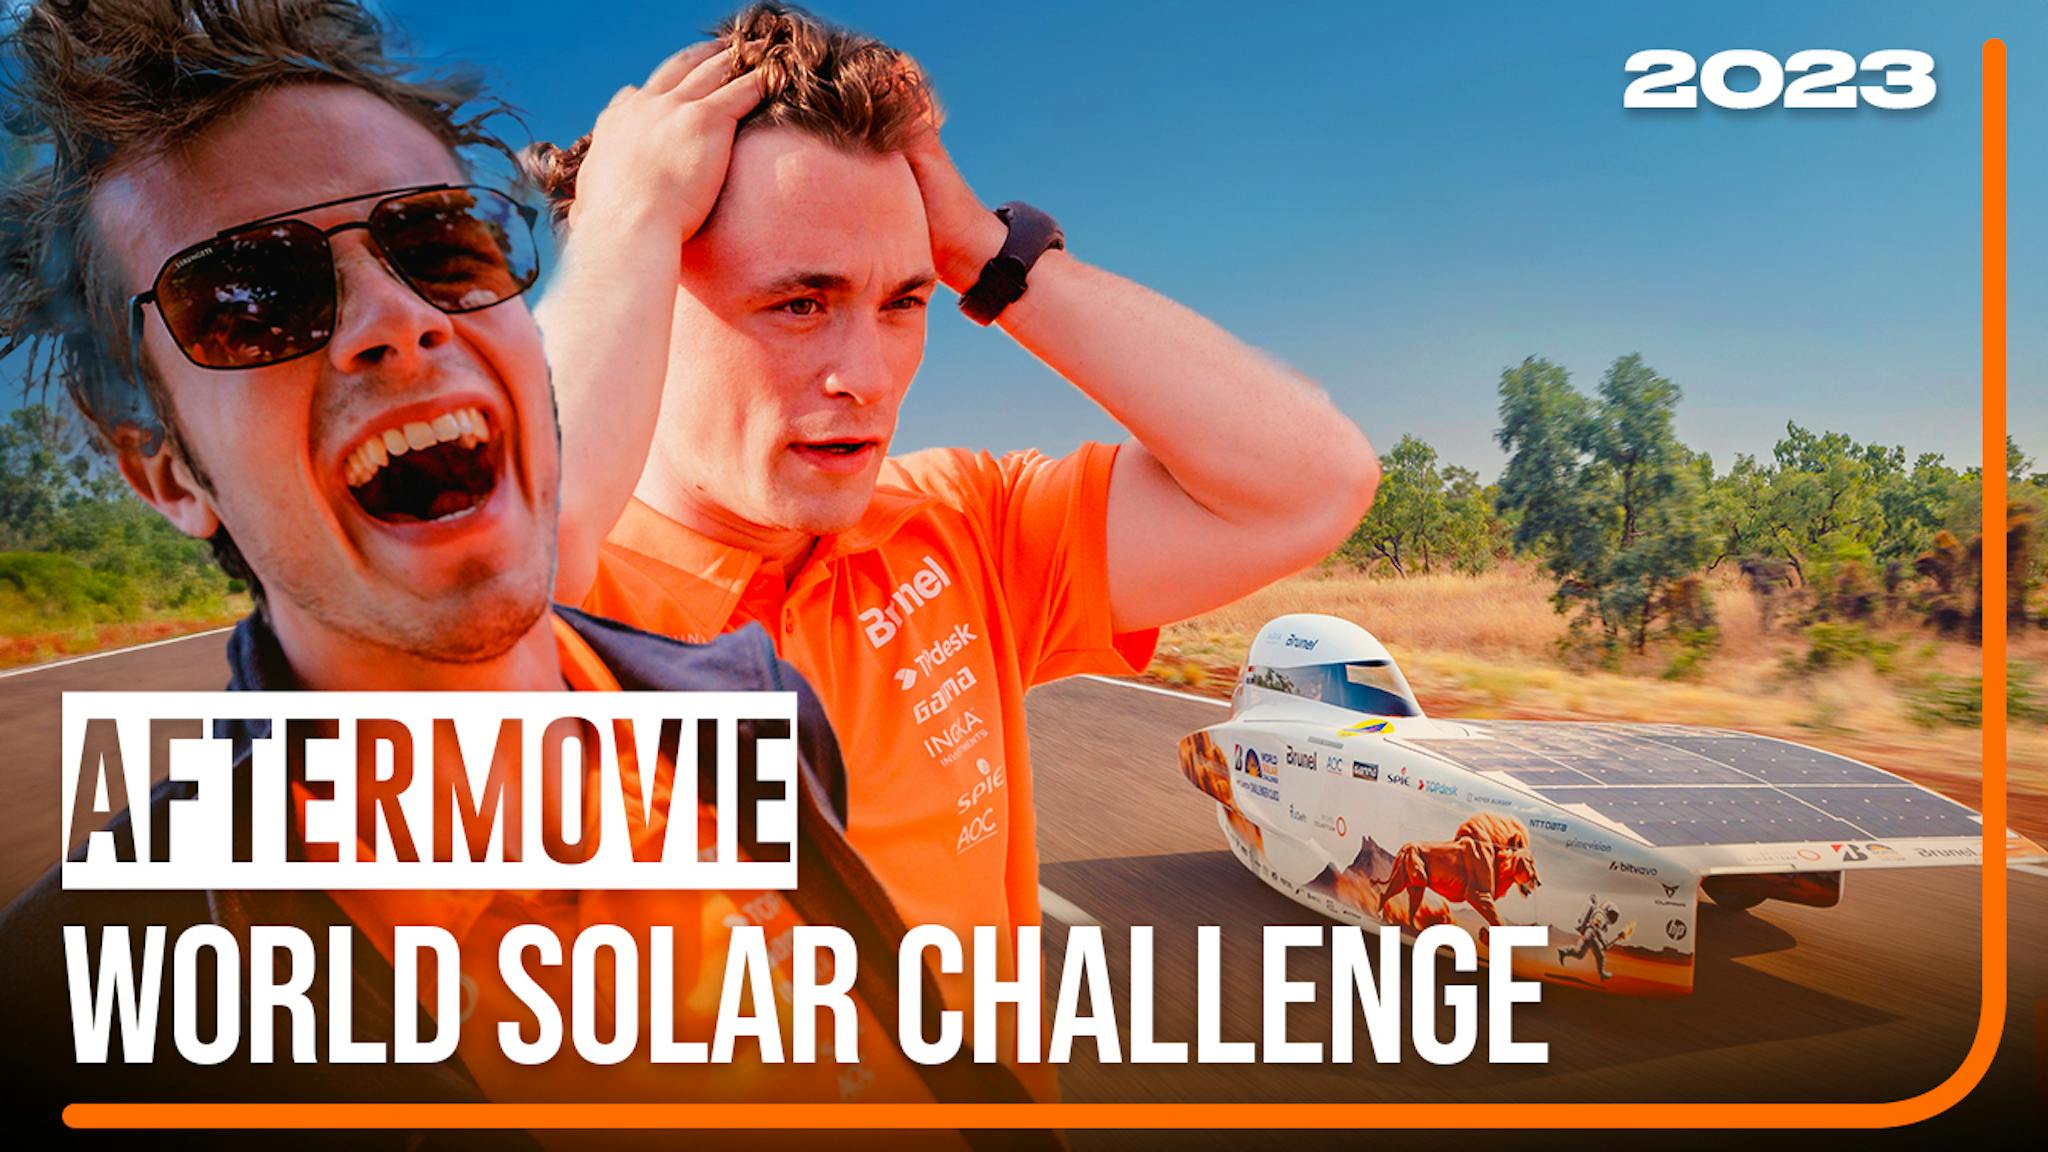 Aftermovie - World Solar Challenge 2023